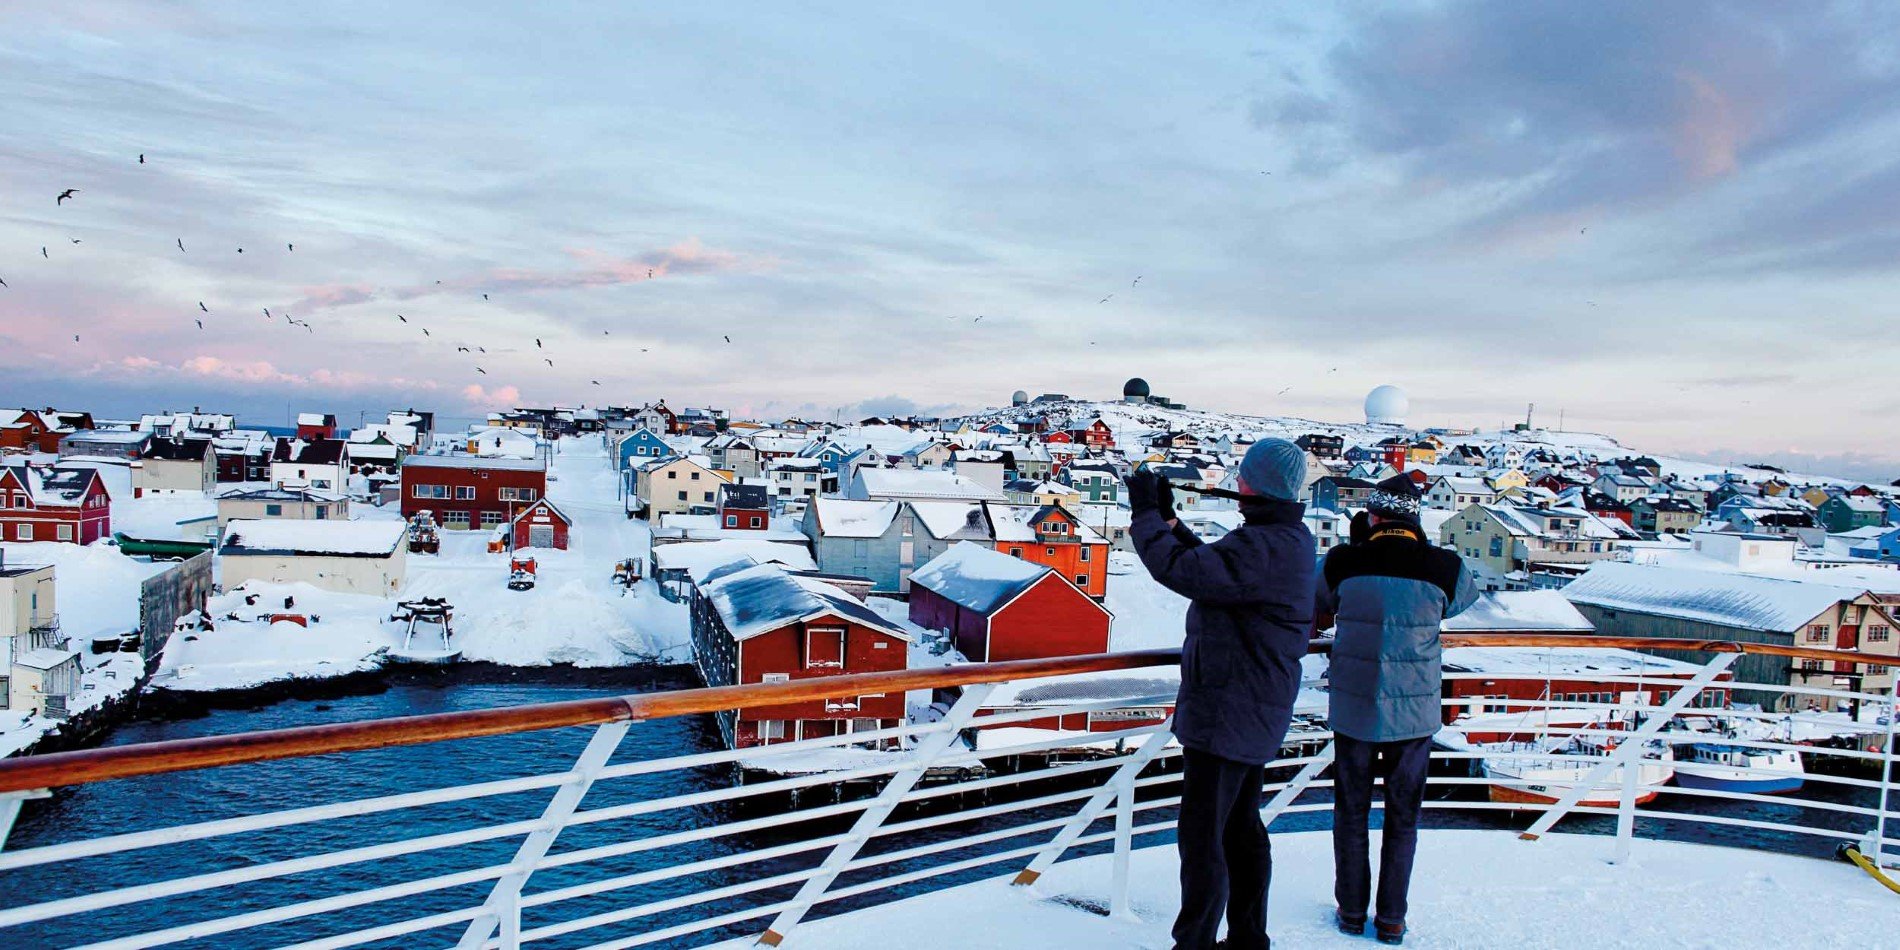 Willkommen in Vardø, der letzte Stop vorm Nordpol